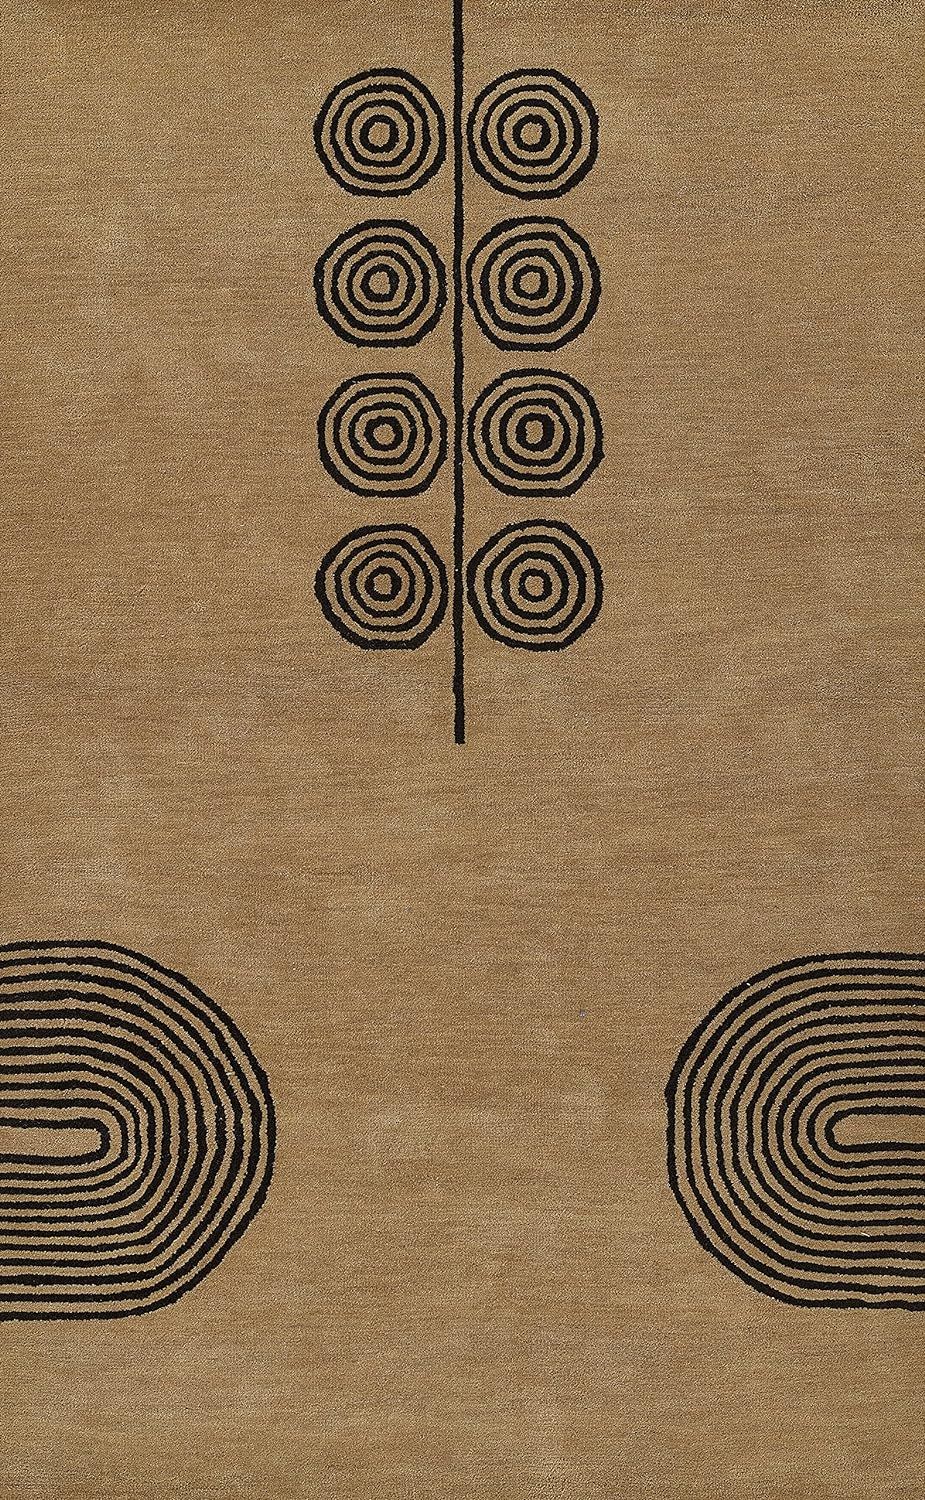 Momeni Simba Wool with Cotton and Latex Backing Area Rug, Beige, 9' X 12' | Amazon (US)